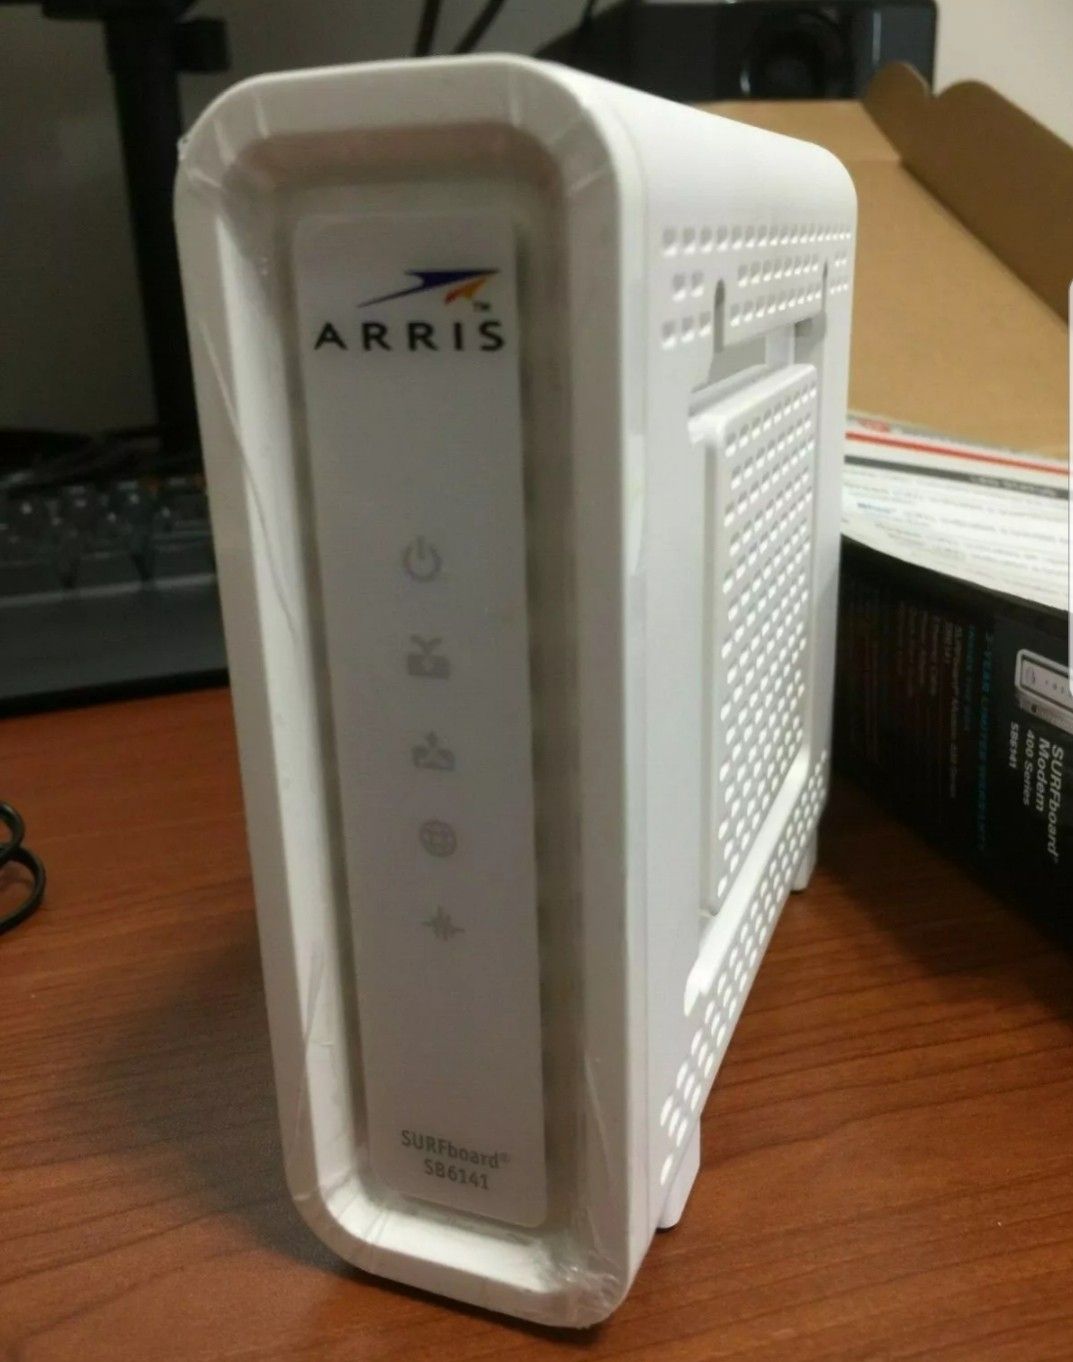 ARRIS SB6141 Cable Modem